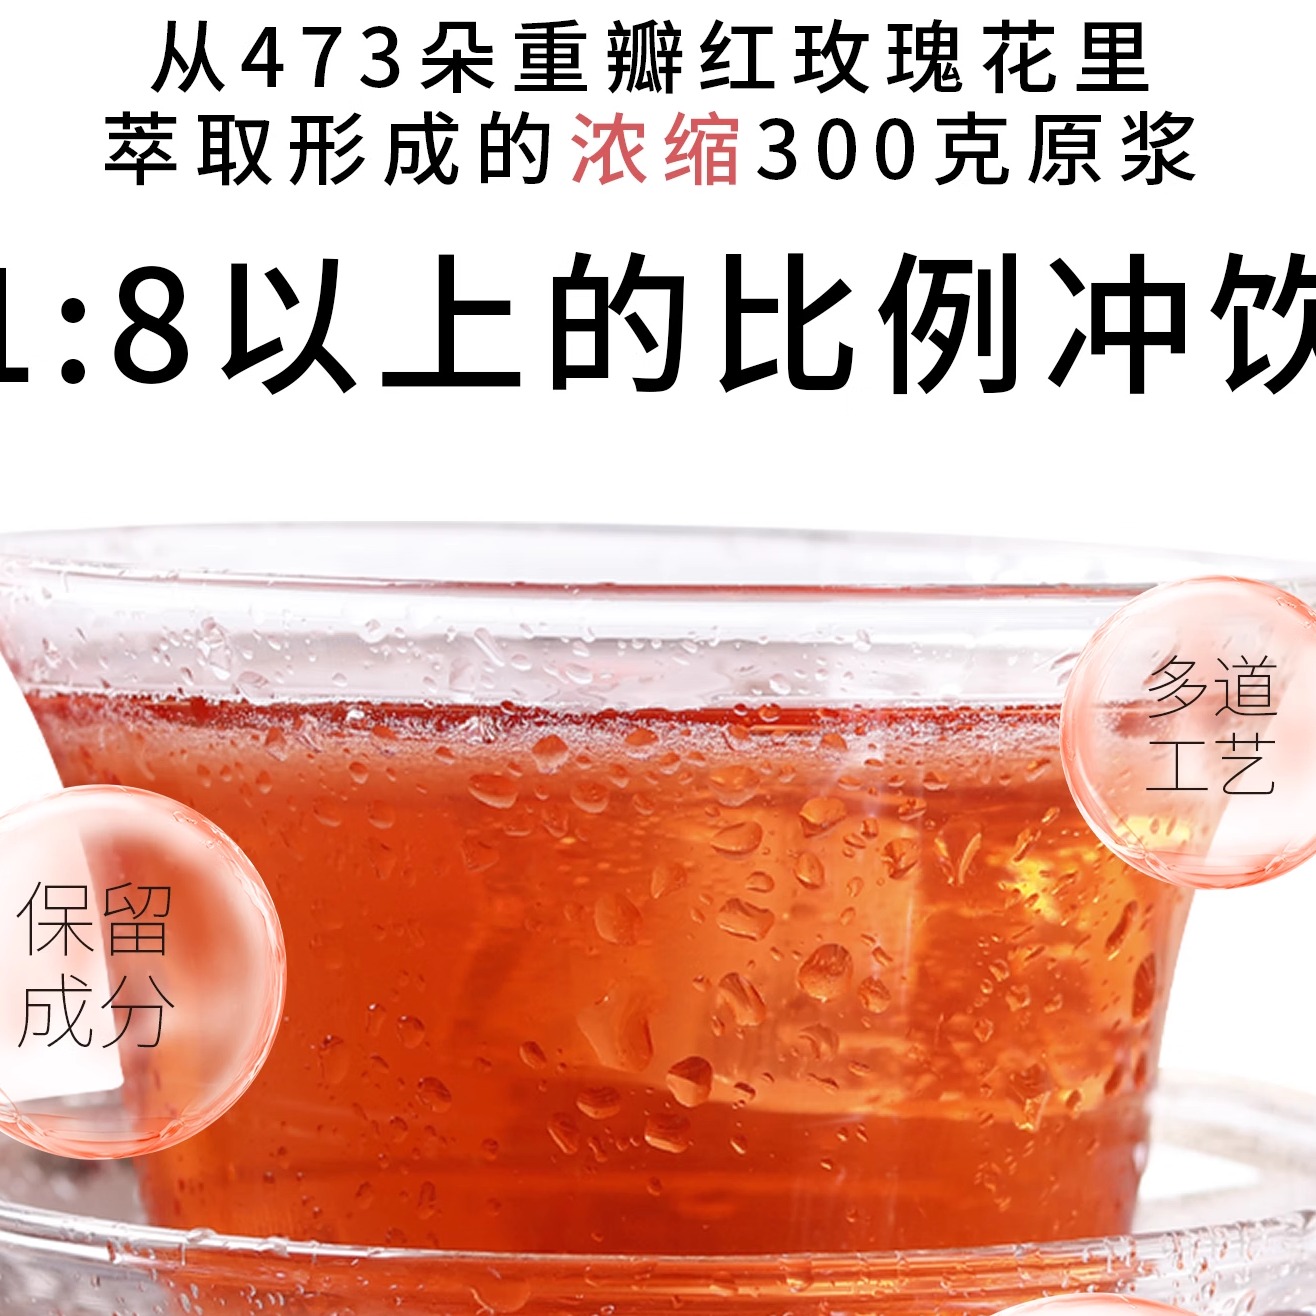 云南农业大学 玫瑰原汁花汁原液纯露鲜花养茶传统滋补营养品300g